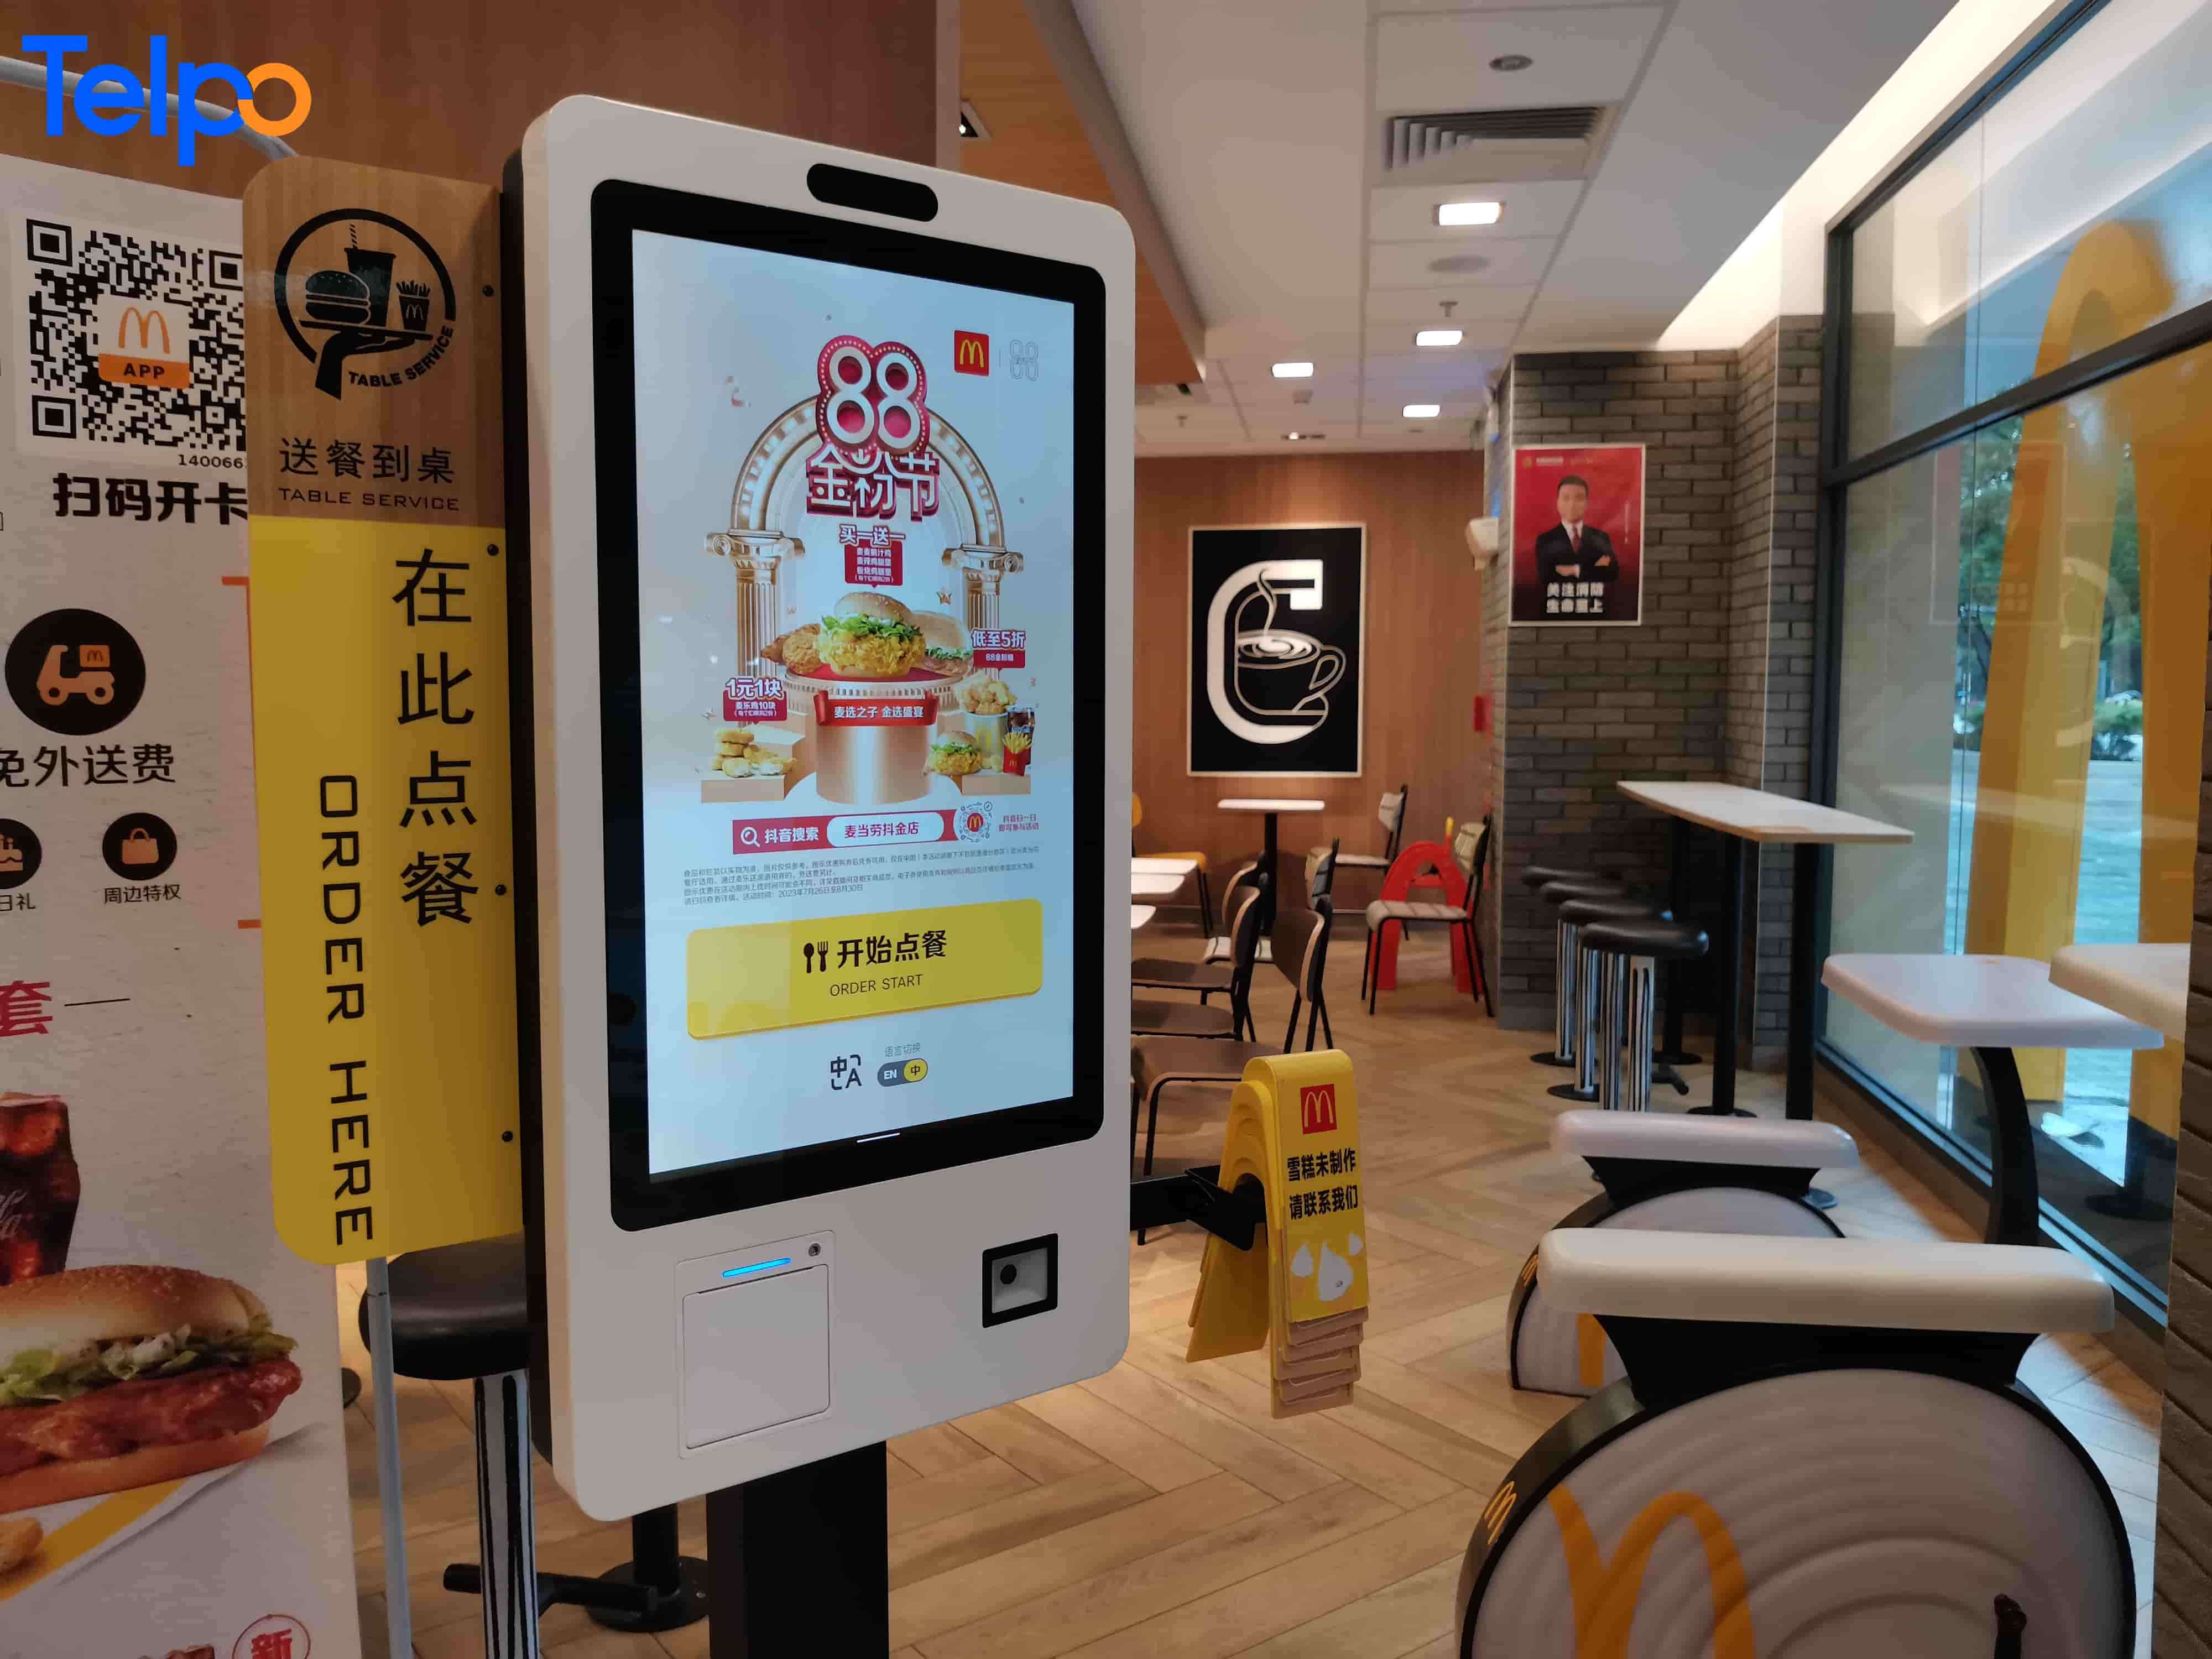 self ordering kiosk in McDonald’s